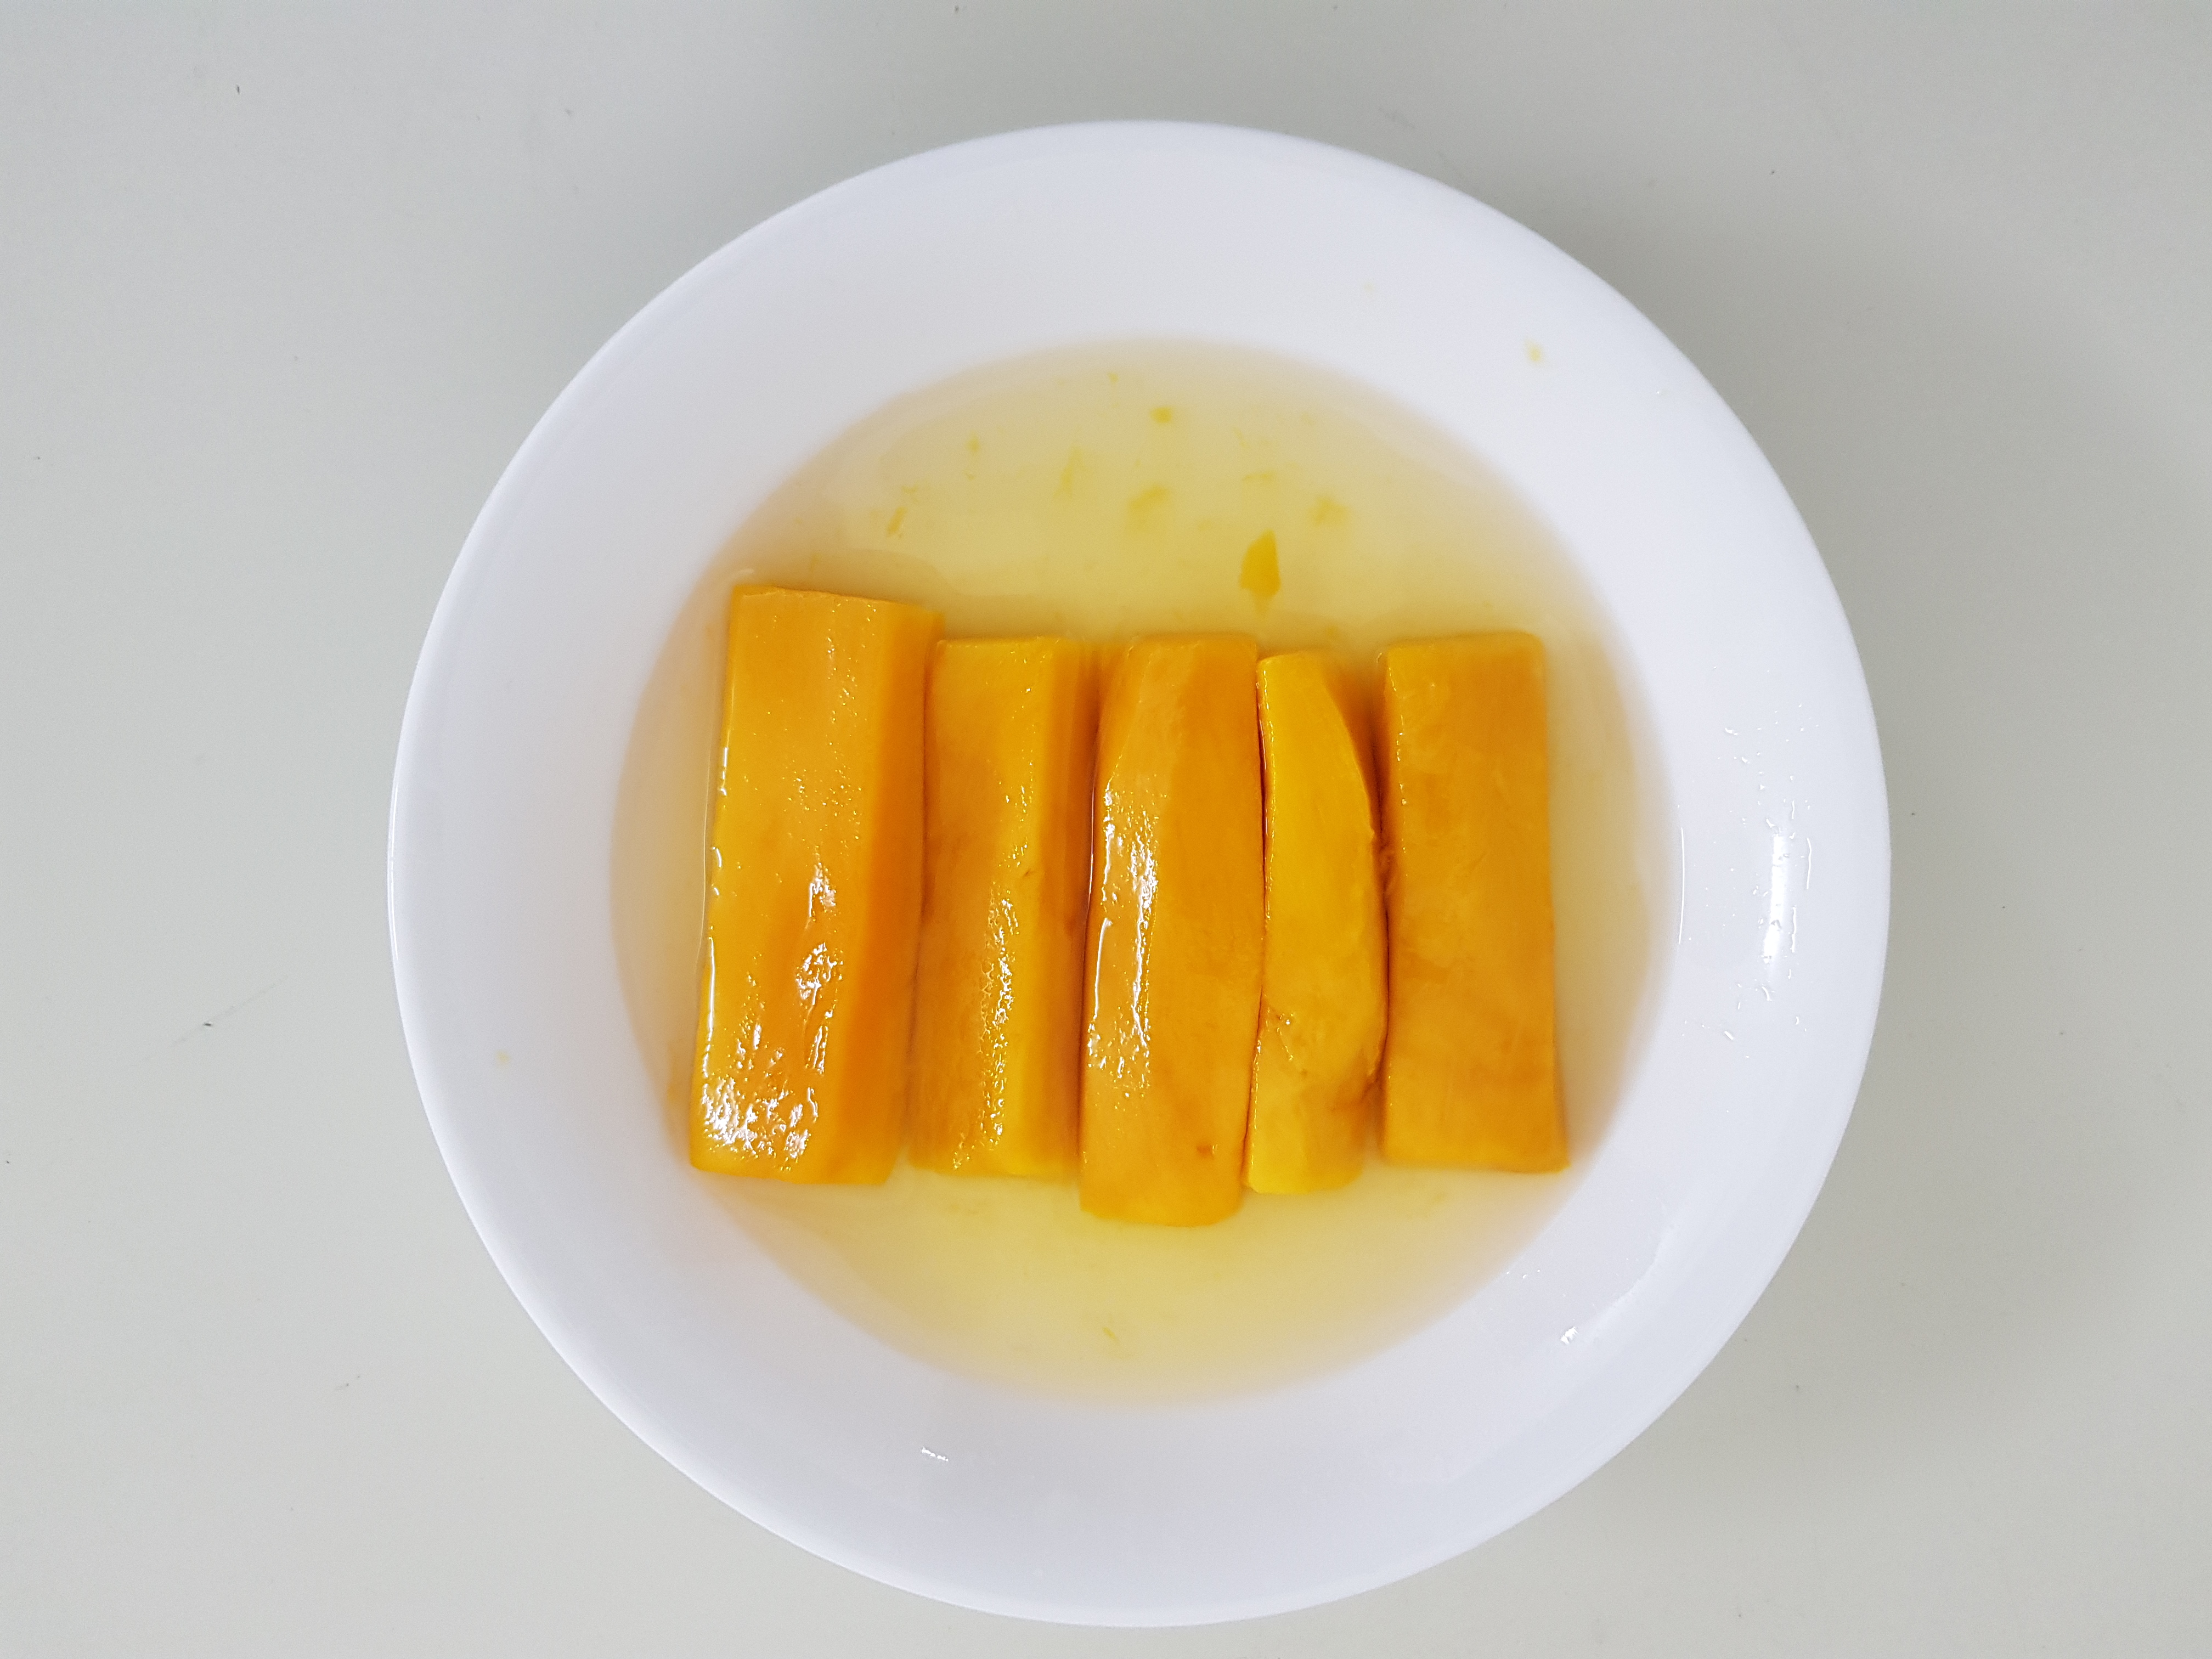 Canned Mango